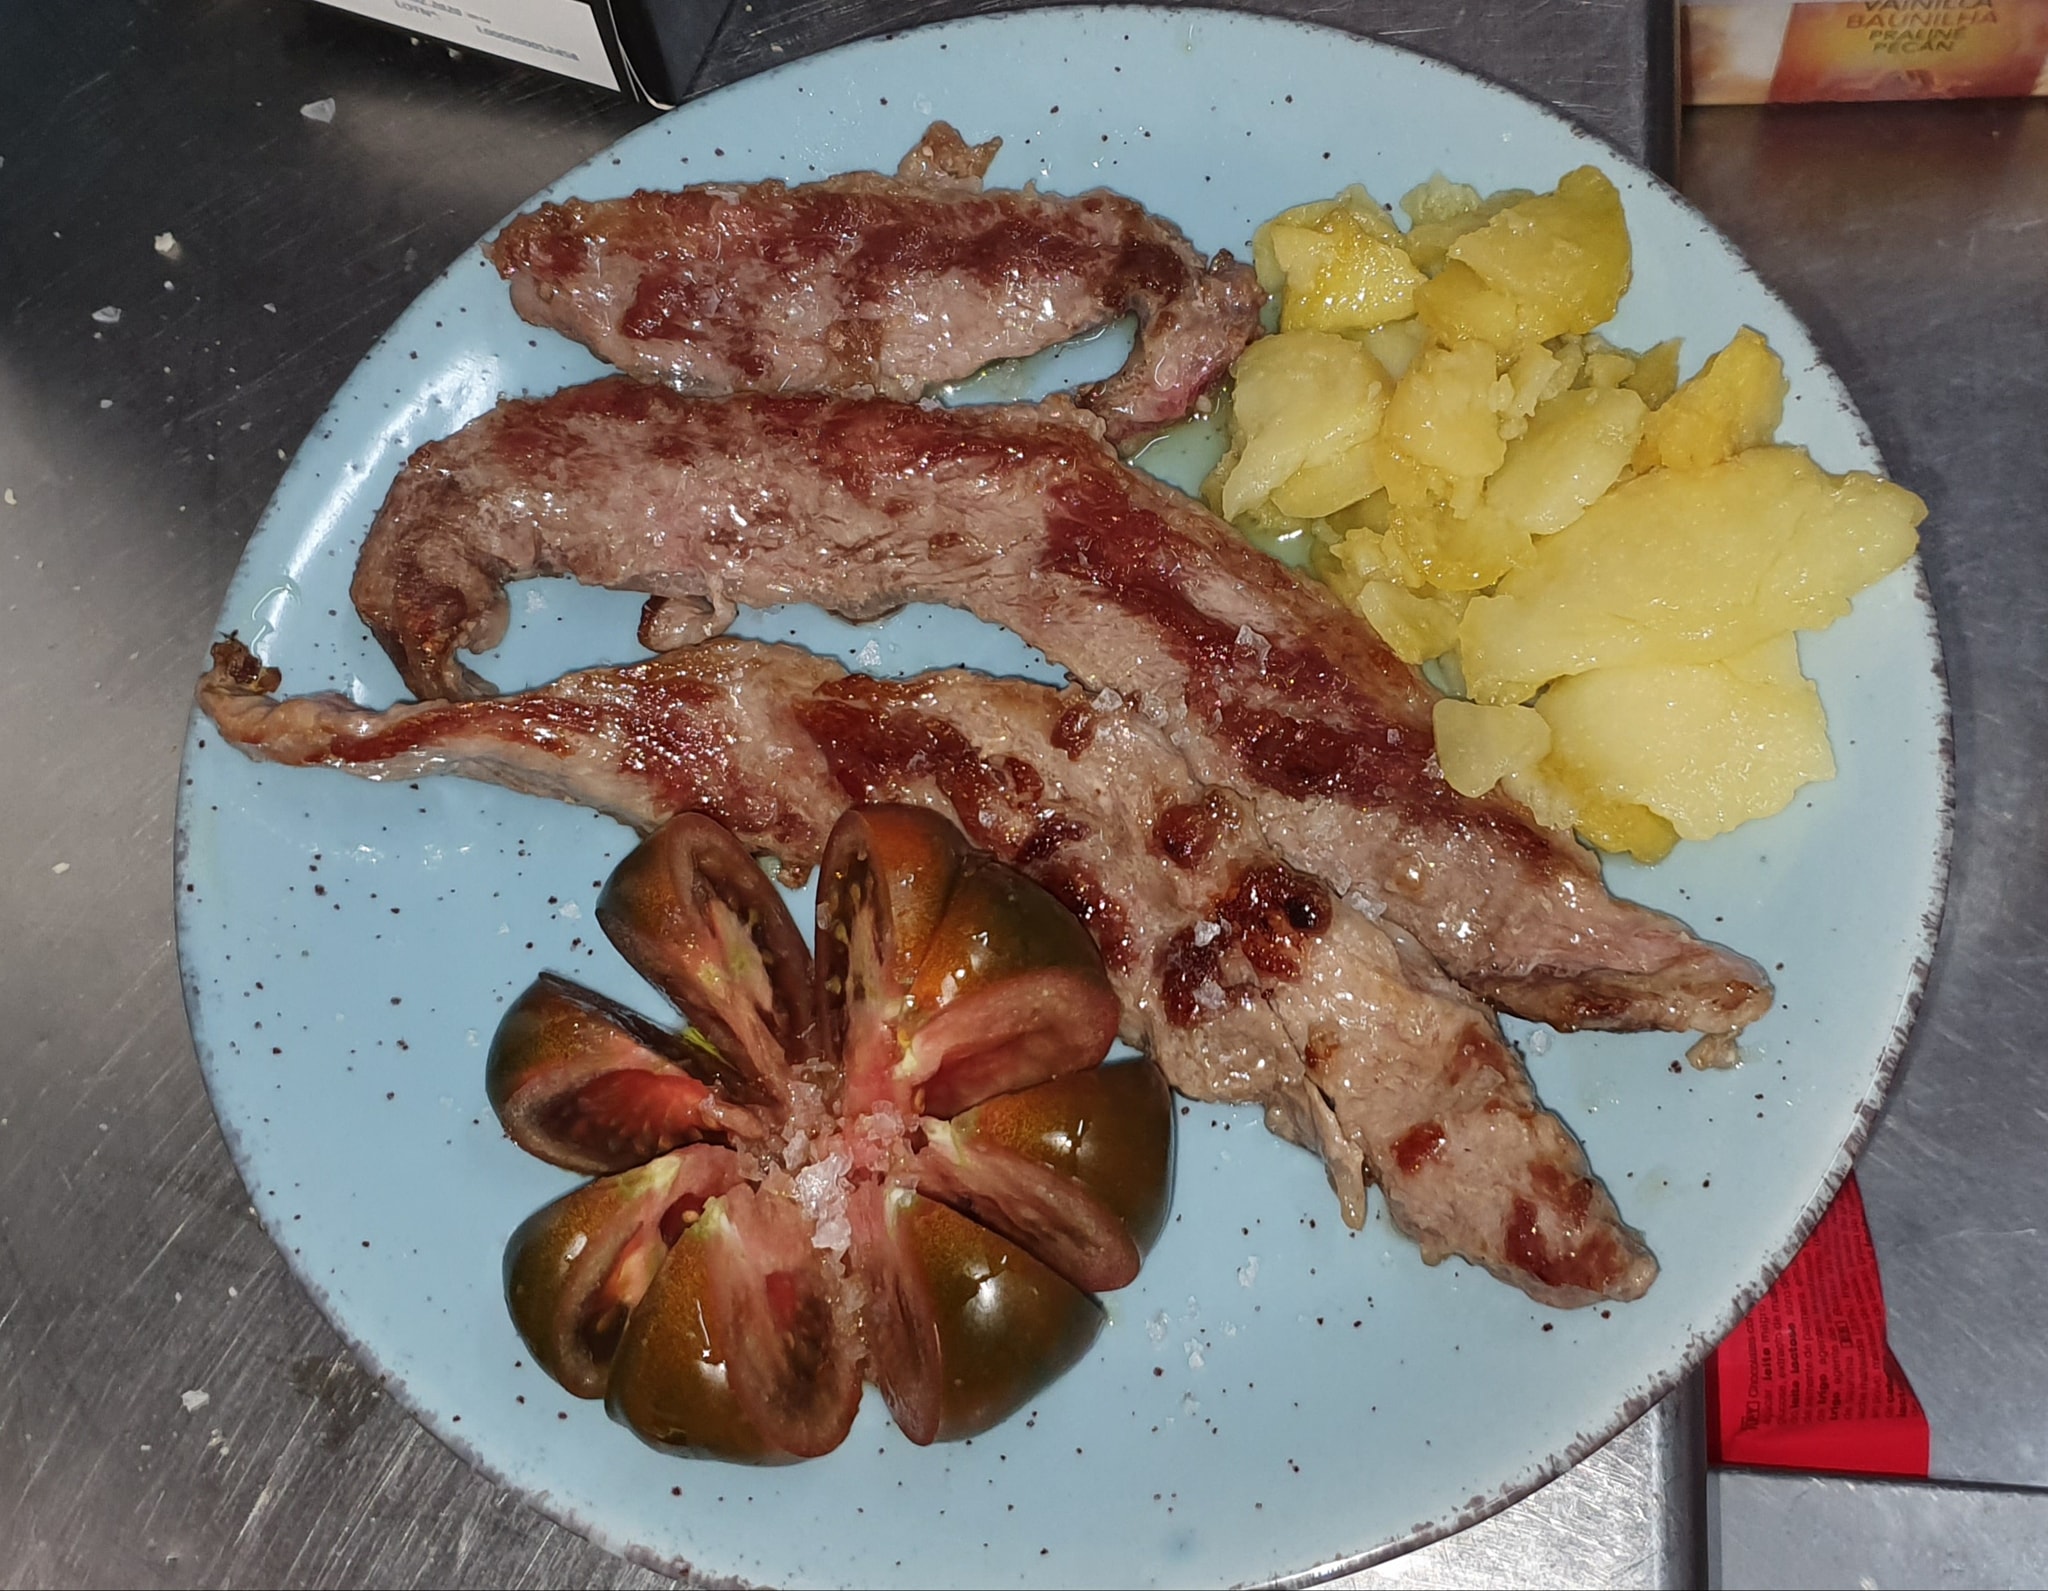 carne-tomate-negro-patatas-restaurante-vela-de-almazan-baeza-jaen-andalucia.jpg